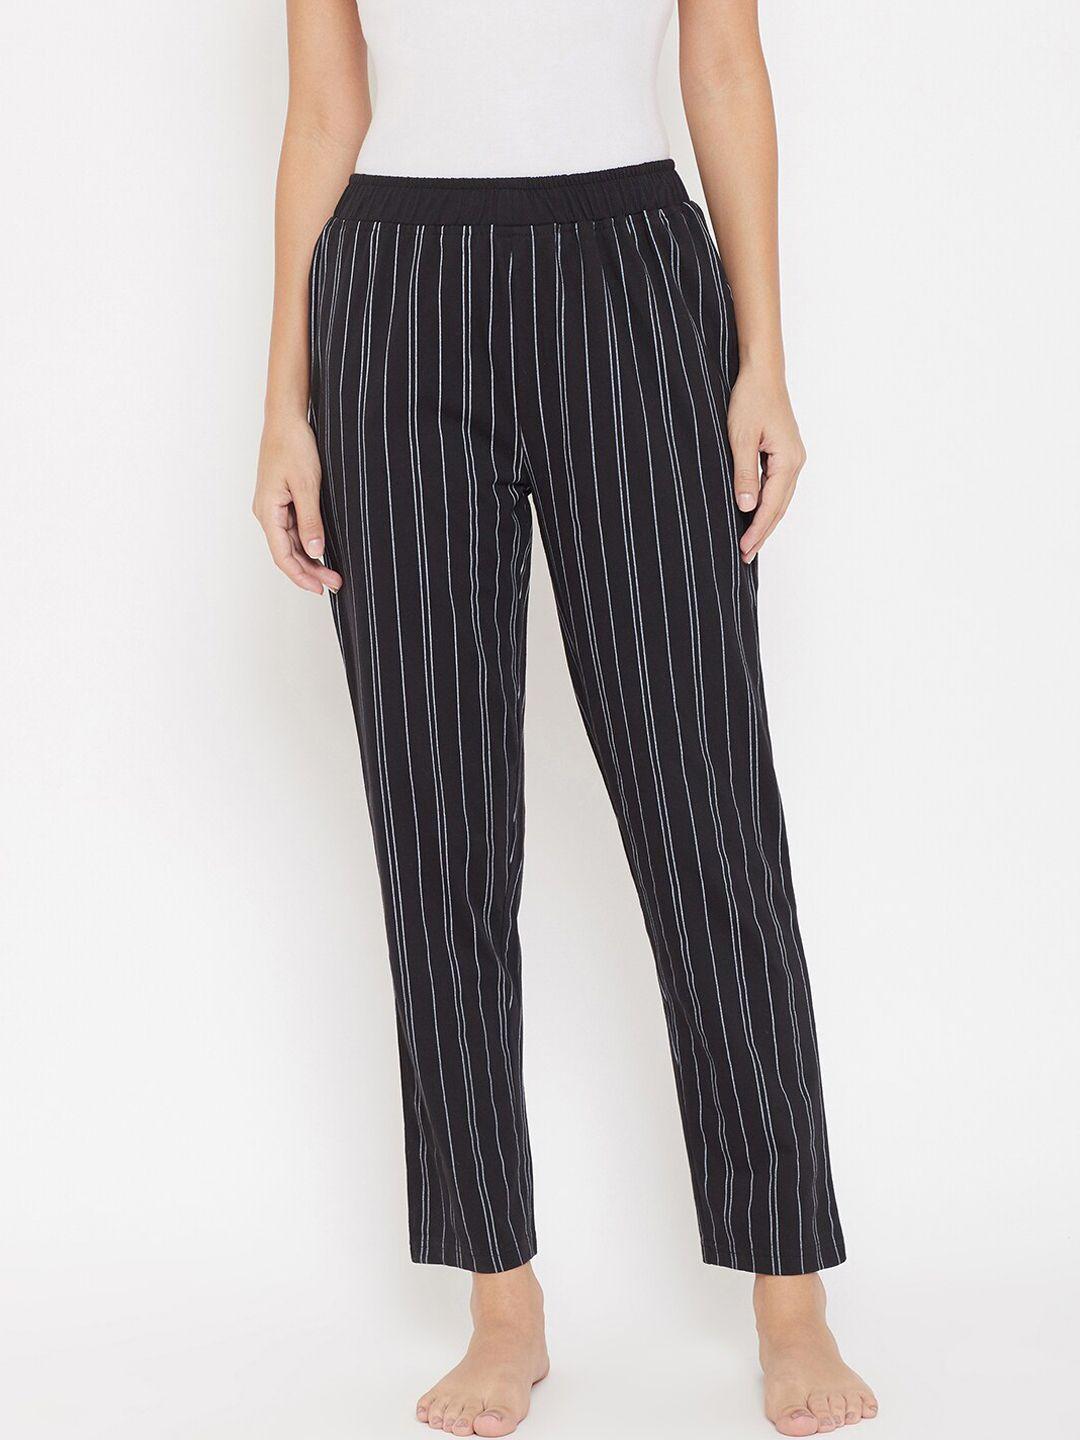 okane-women-black-&-white-striped-cotton-lounge-pants